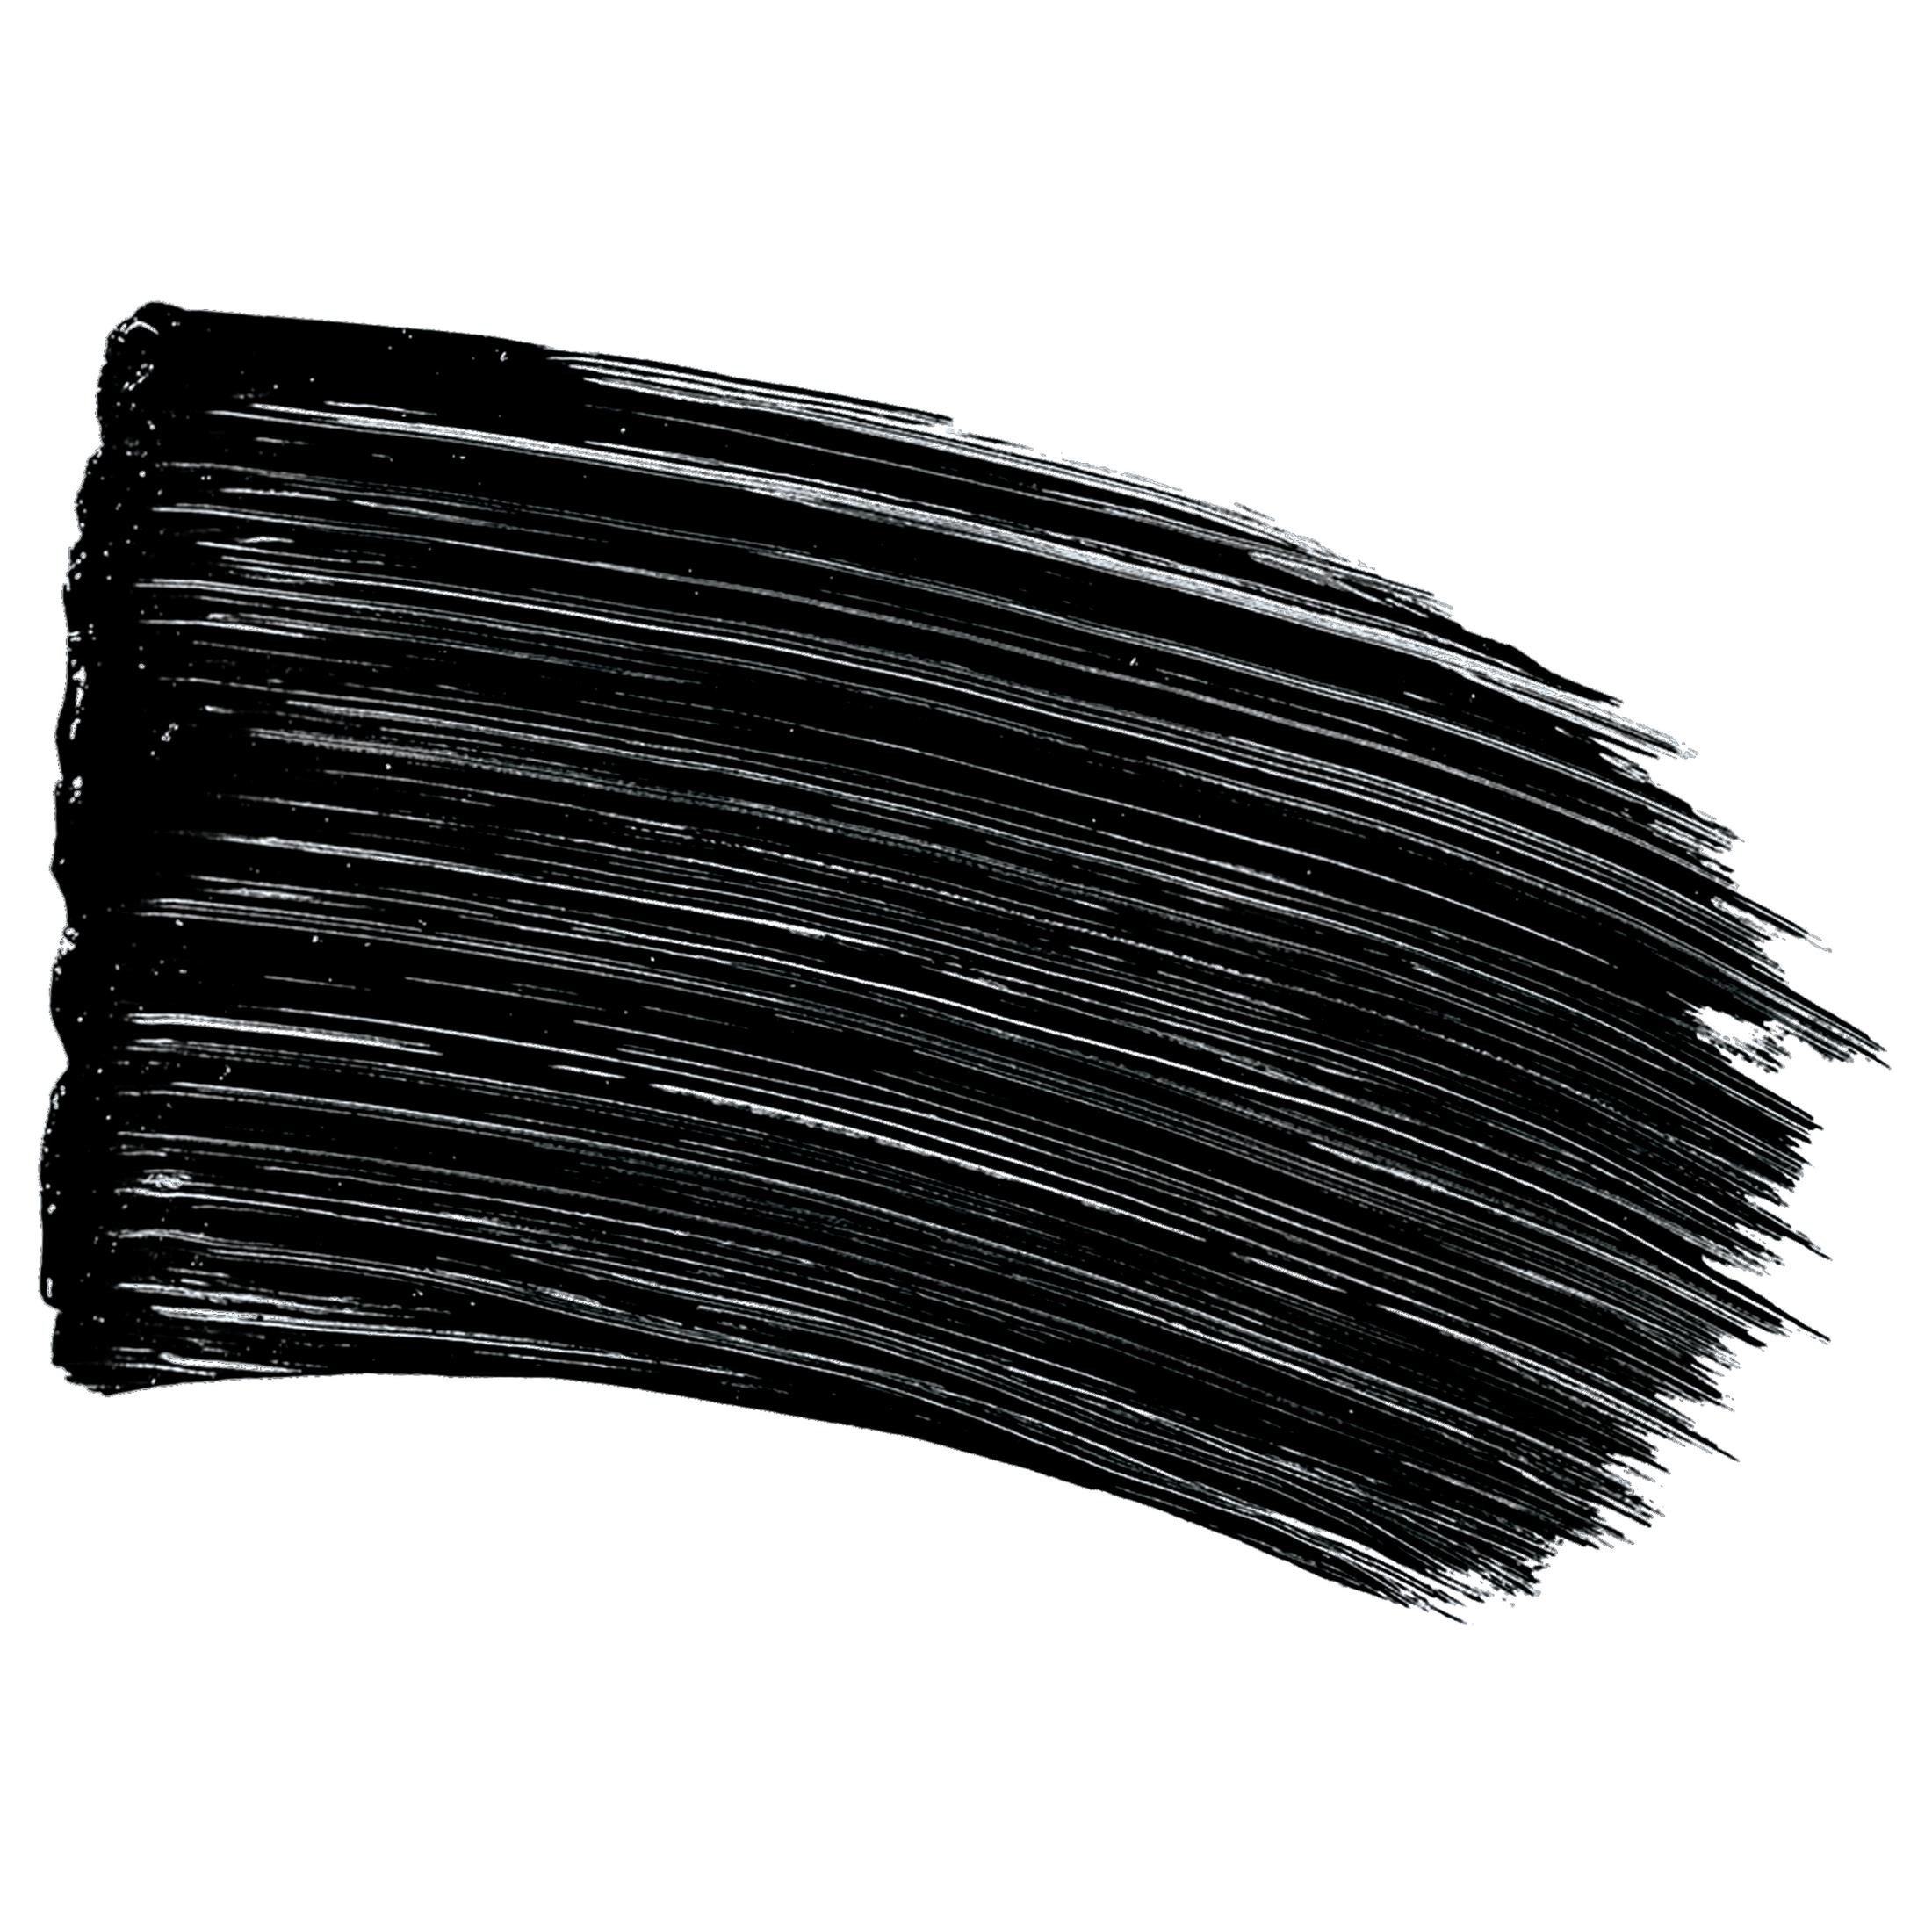 L'Oreal Paris Voluminous Original Waterproof Mascara, Blackest Black 2 Pack - image 6 of 13